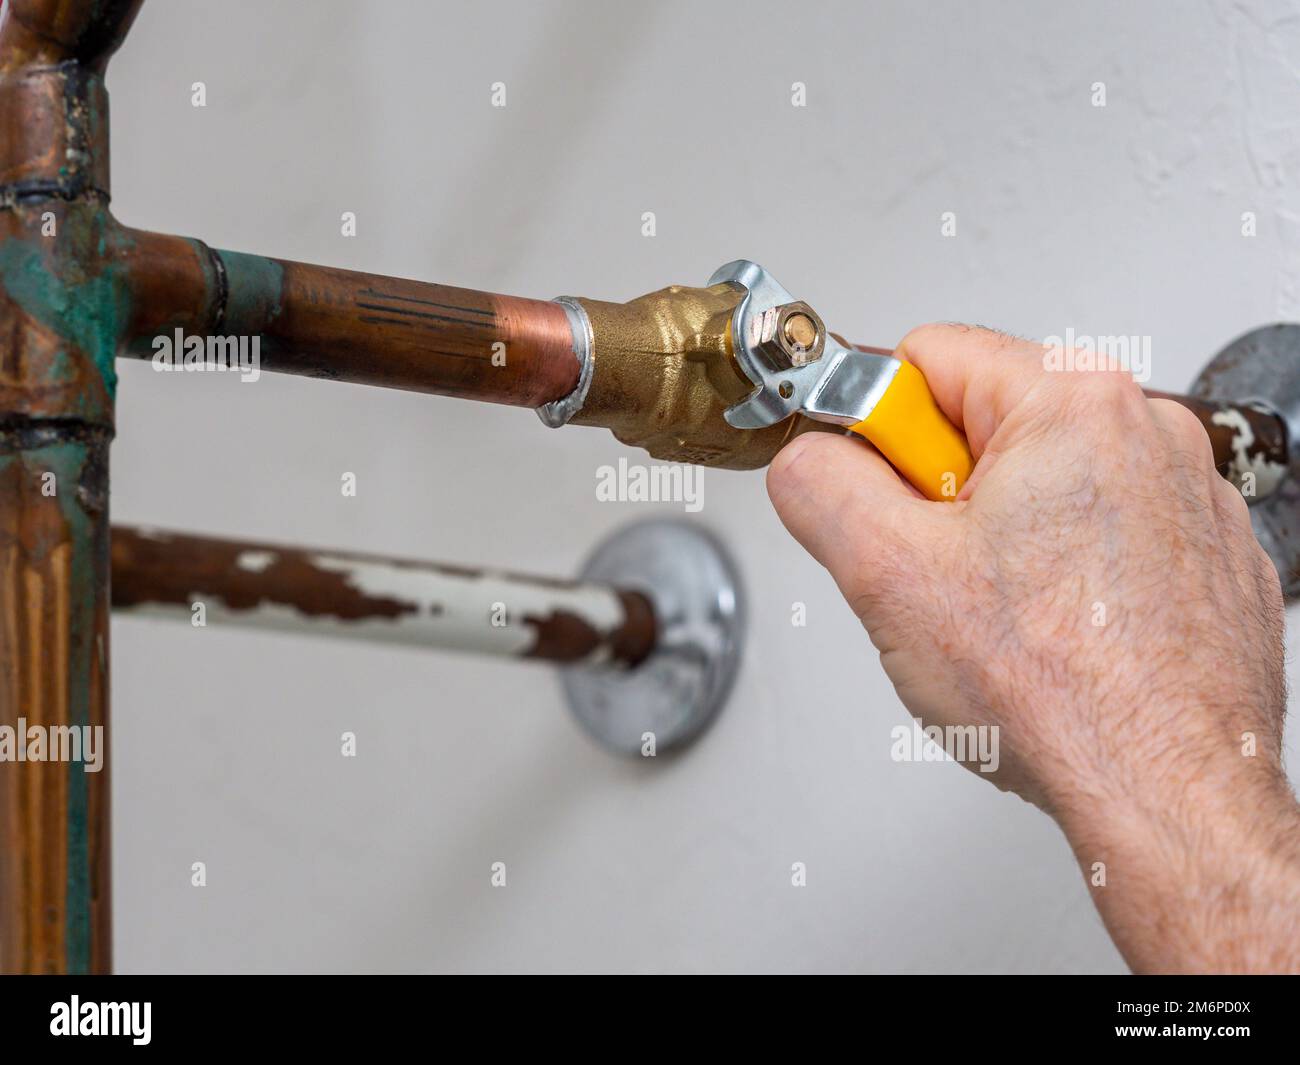 Idraulico valvola di arresto dell'acqua. Tubo idraulico in rame con valvola di alimentazione dell'acqua in ottone e maniglia del rubinetto gialla. Foto Stock